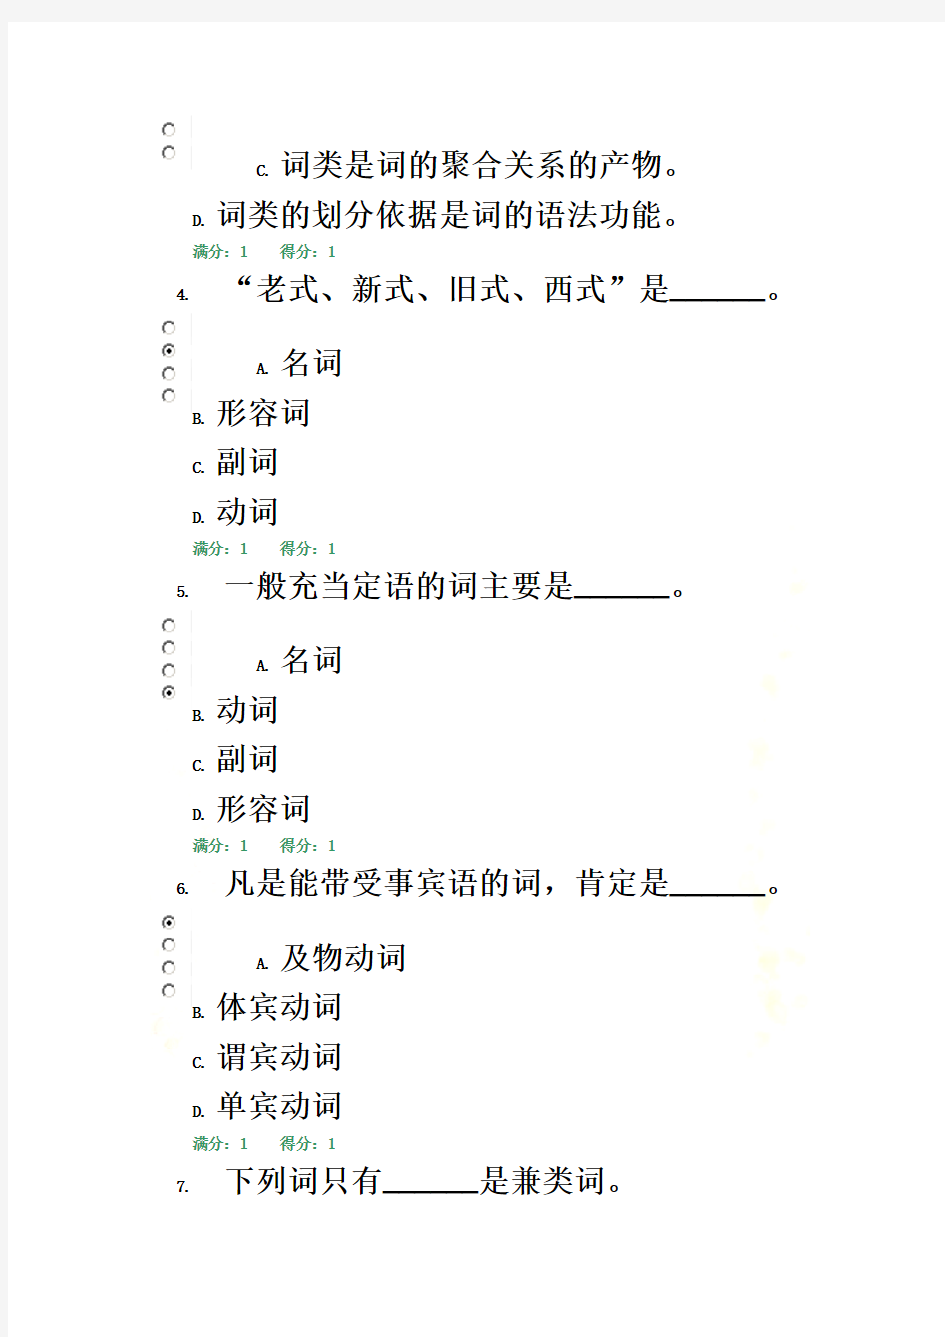 现代汉语专题网上作业答案02任务